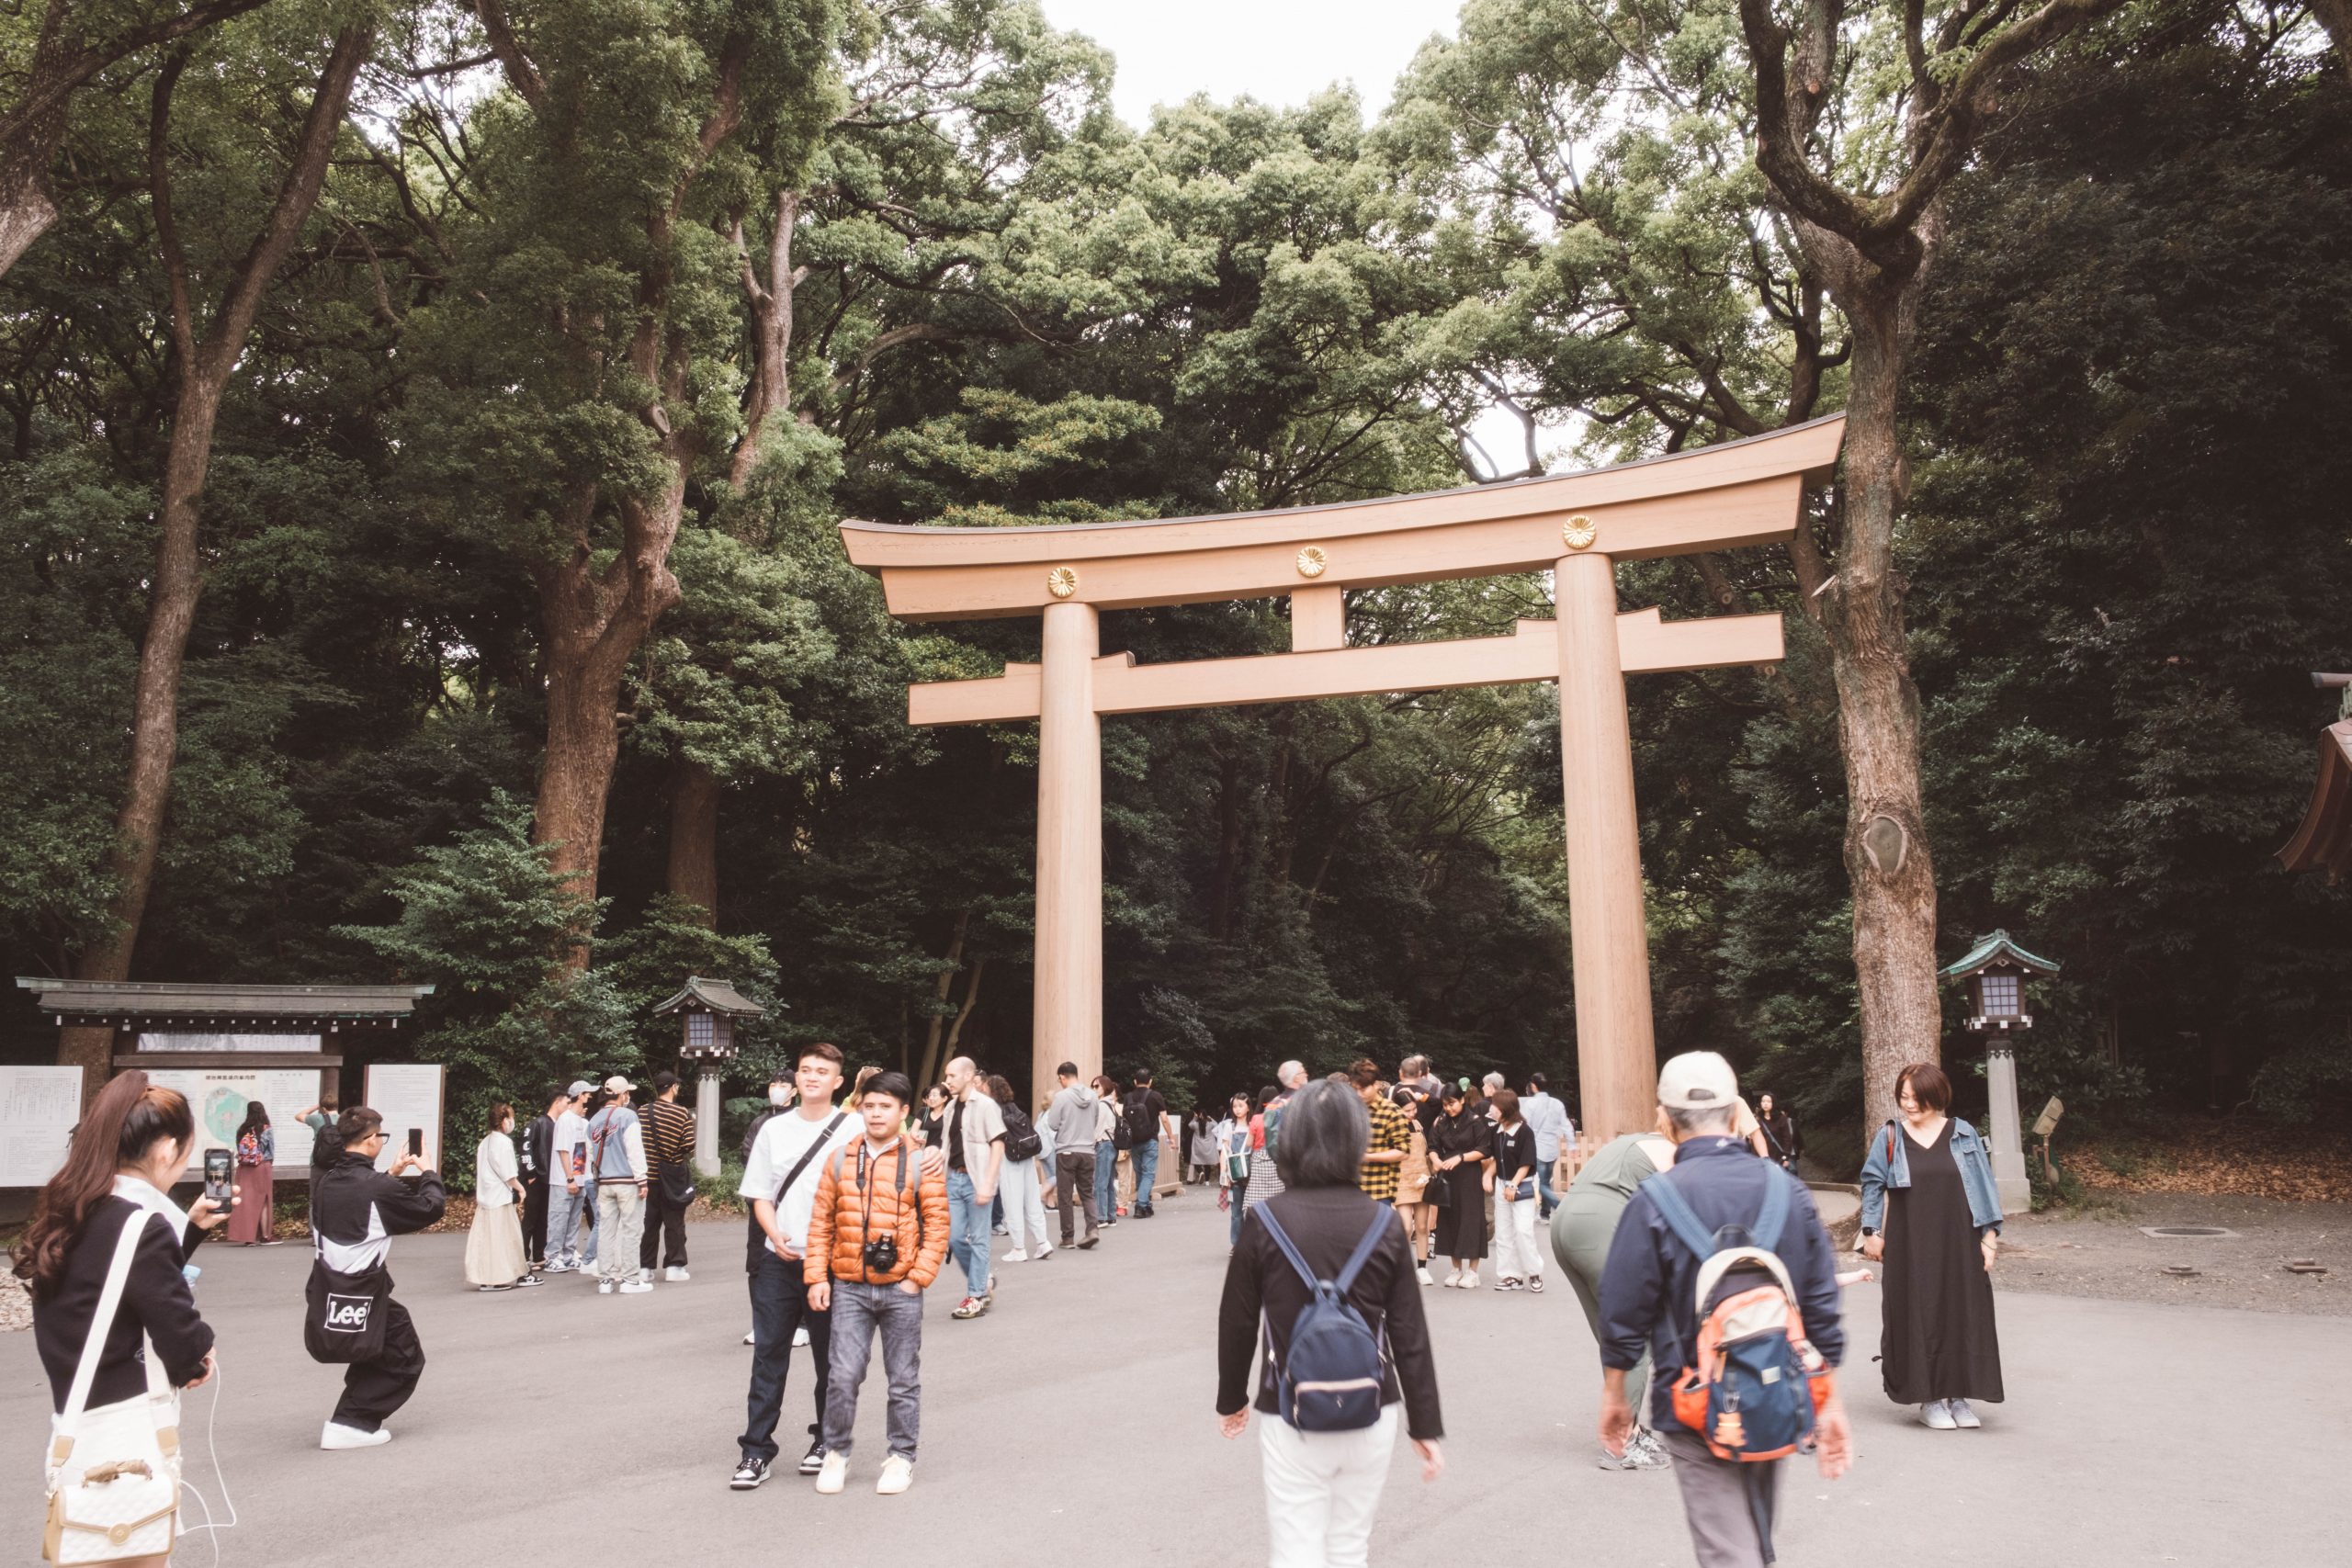 Main entrance at Meiji Jingu shrine